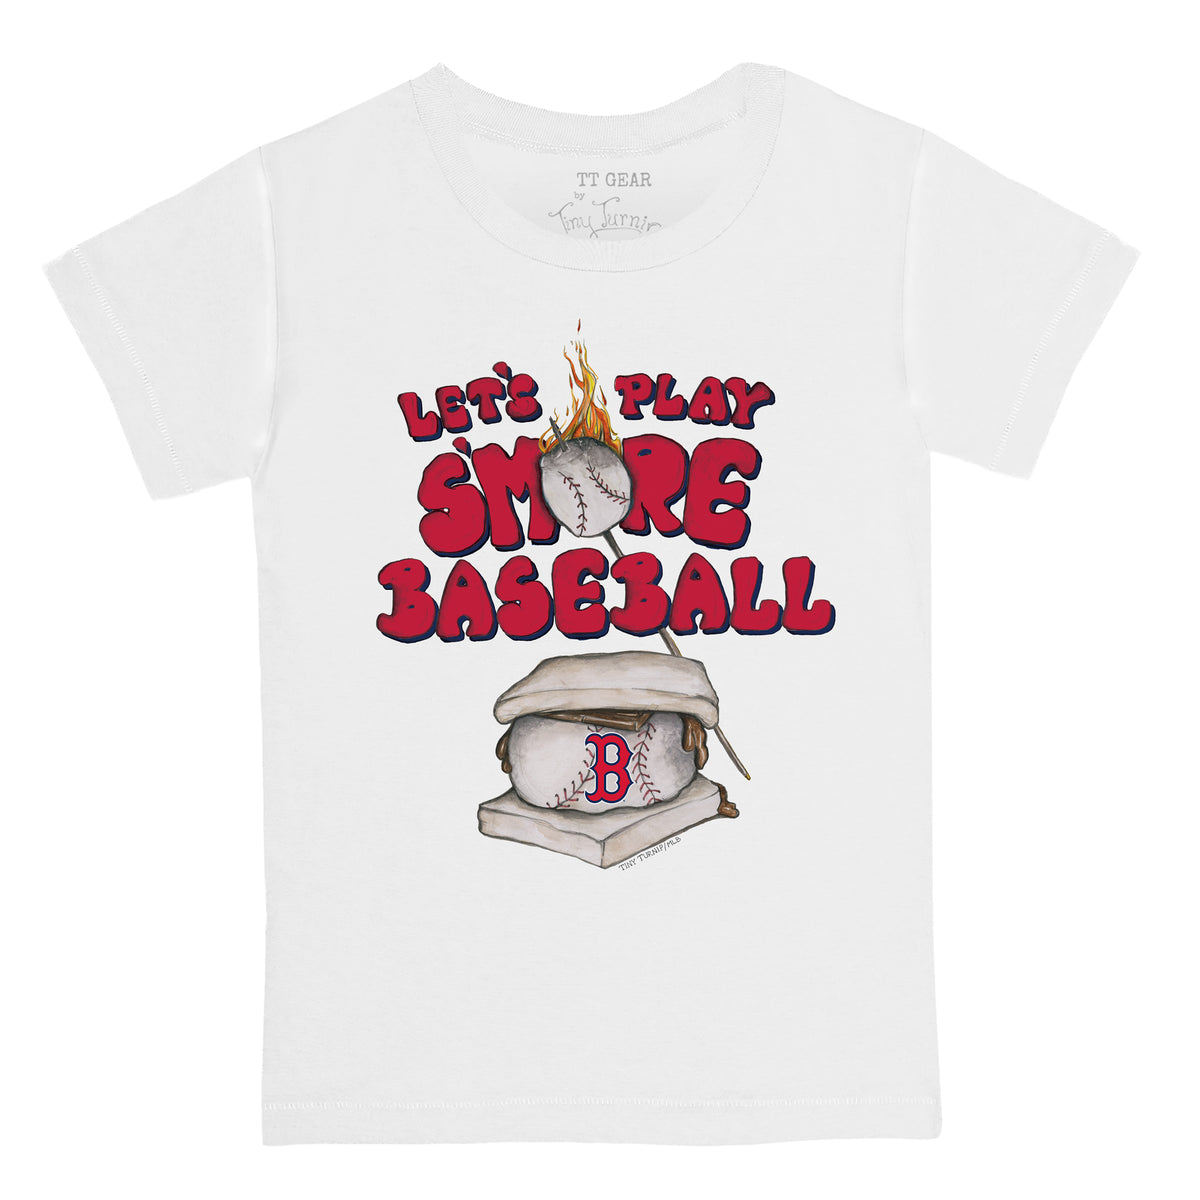 Toddler Tiny Turnip Red St. Louis Cardinals Baseball Cross Bats T-Shirt